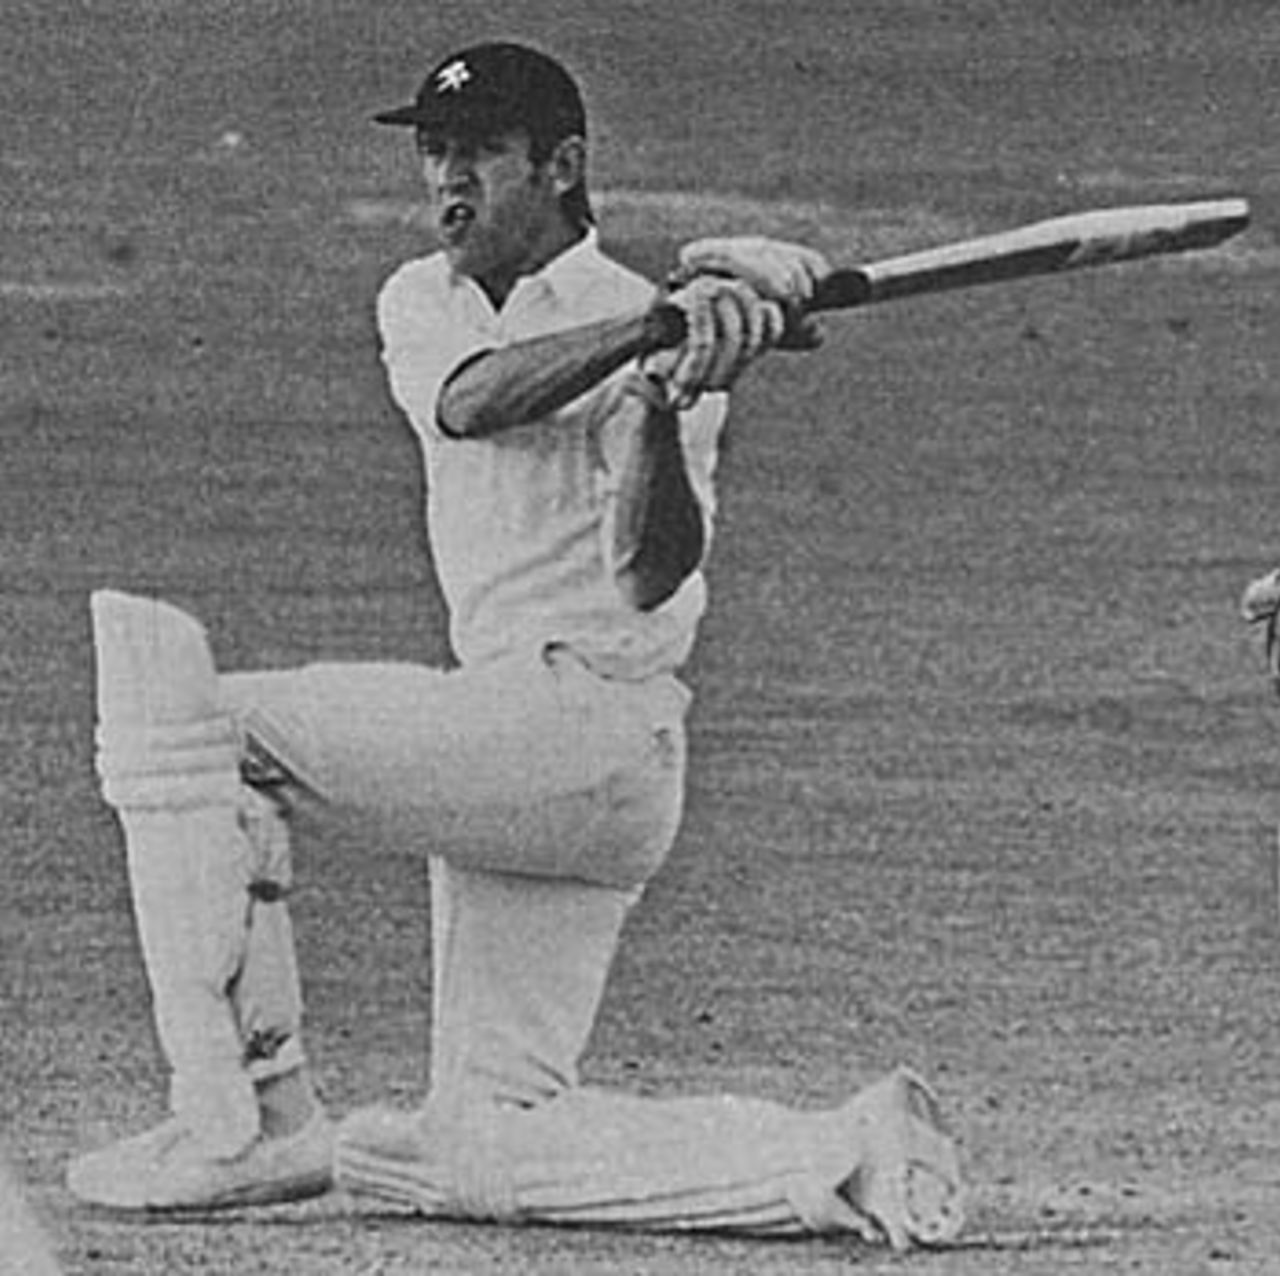 Brian Luckhurst batting for Kent, 1973